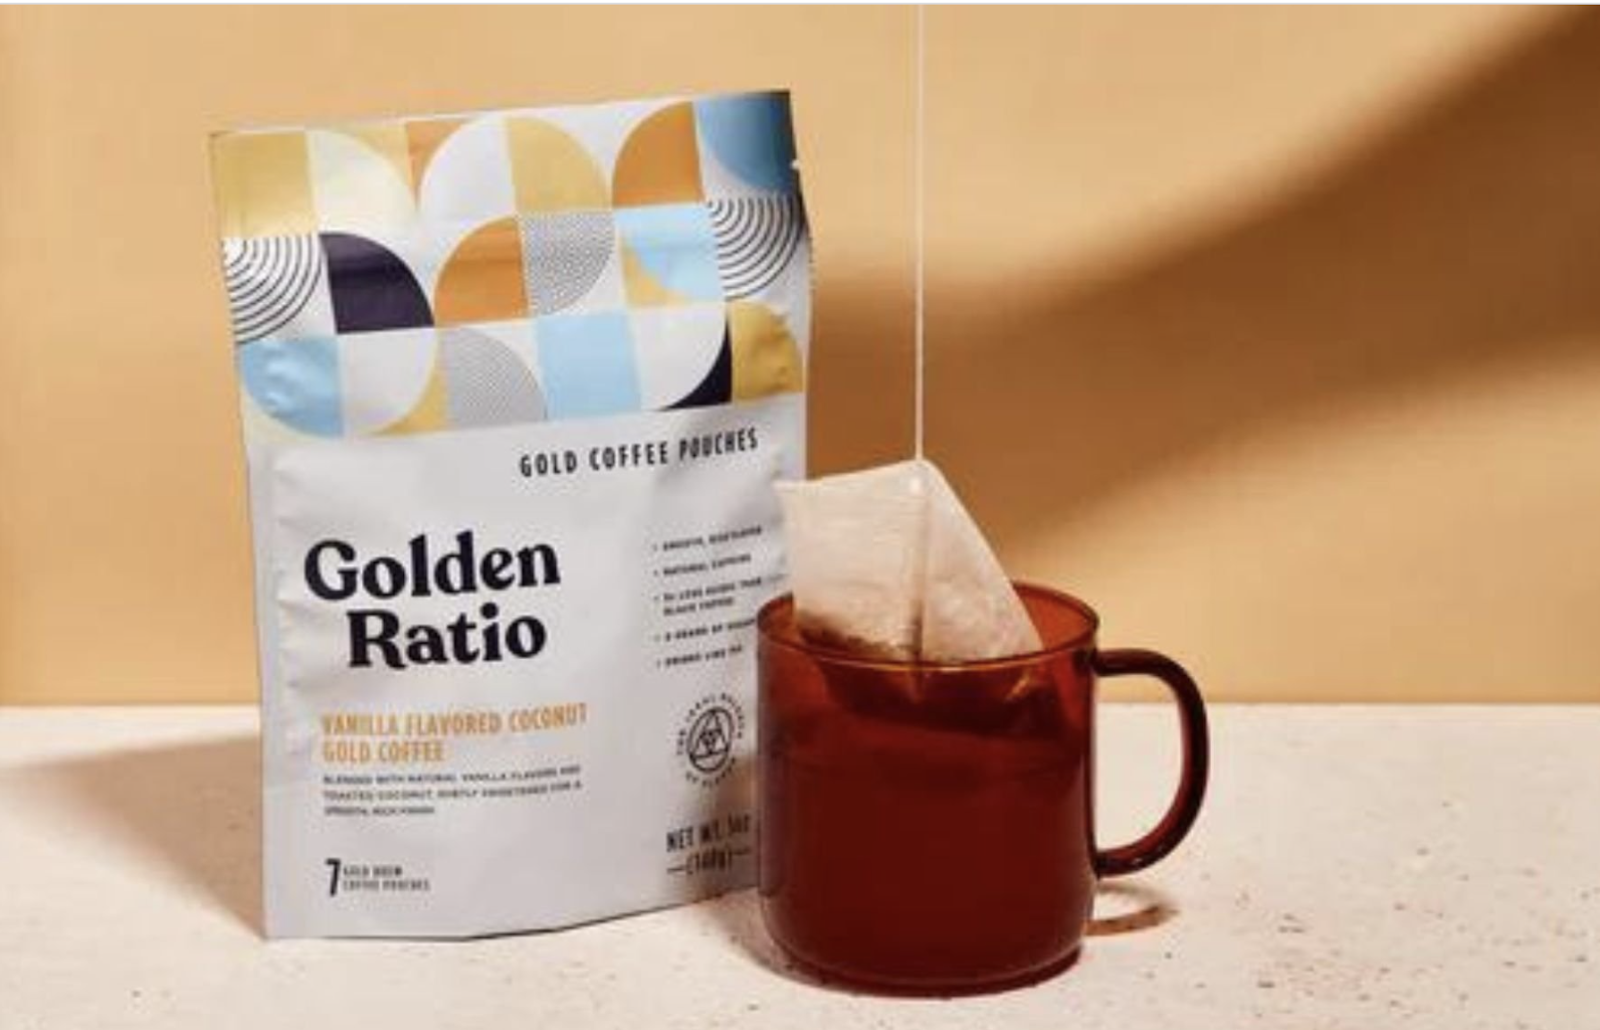 Golden Ratio Gold Coffee 14 oz Bag